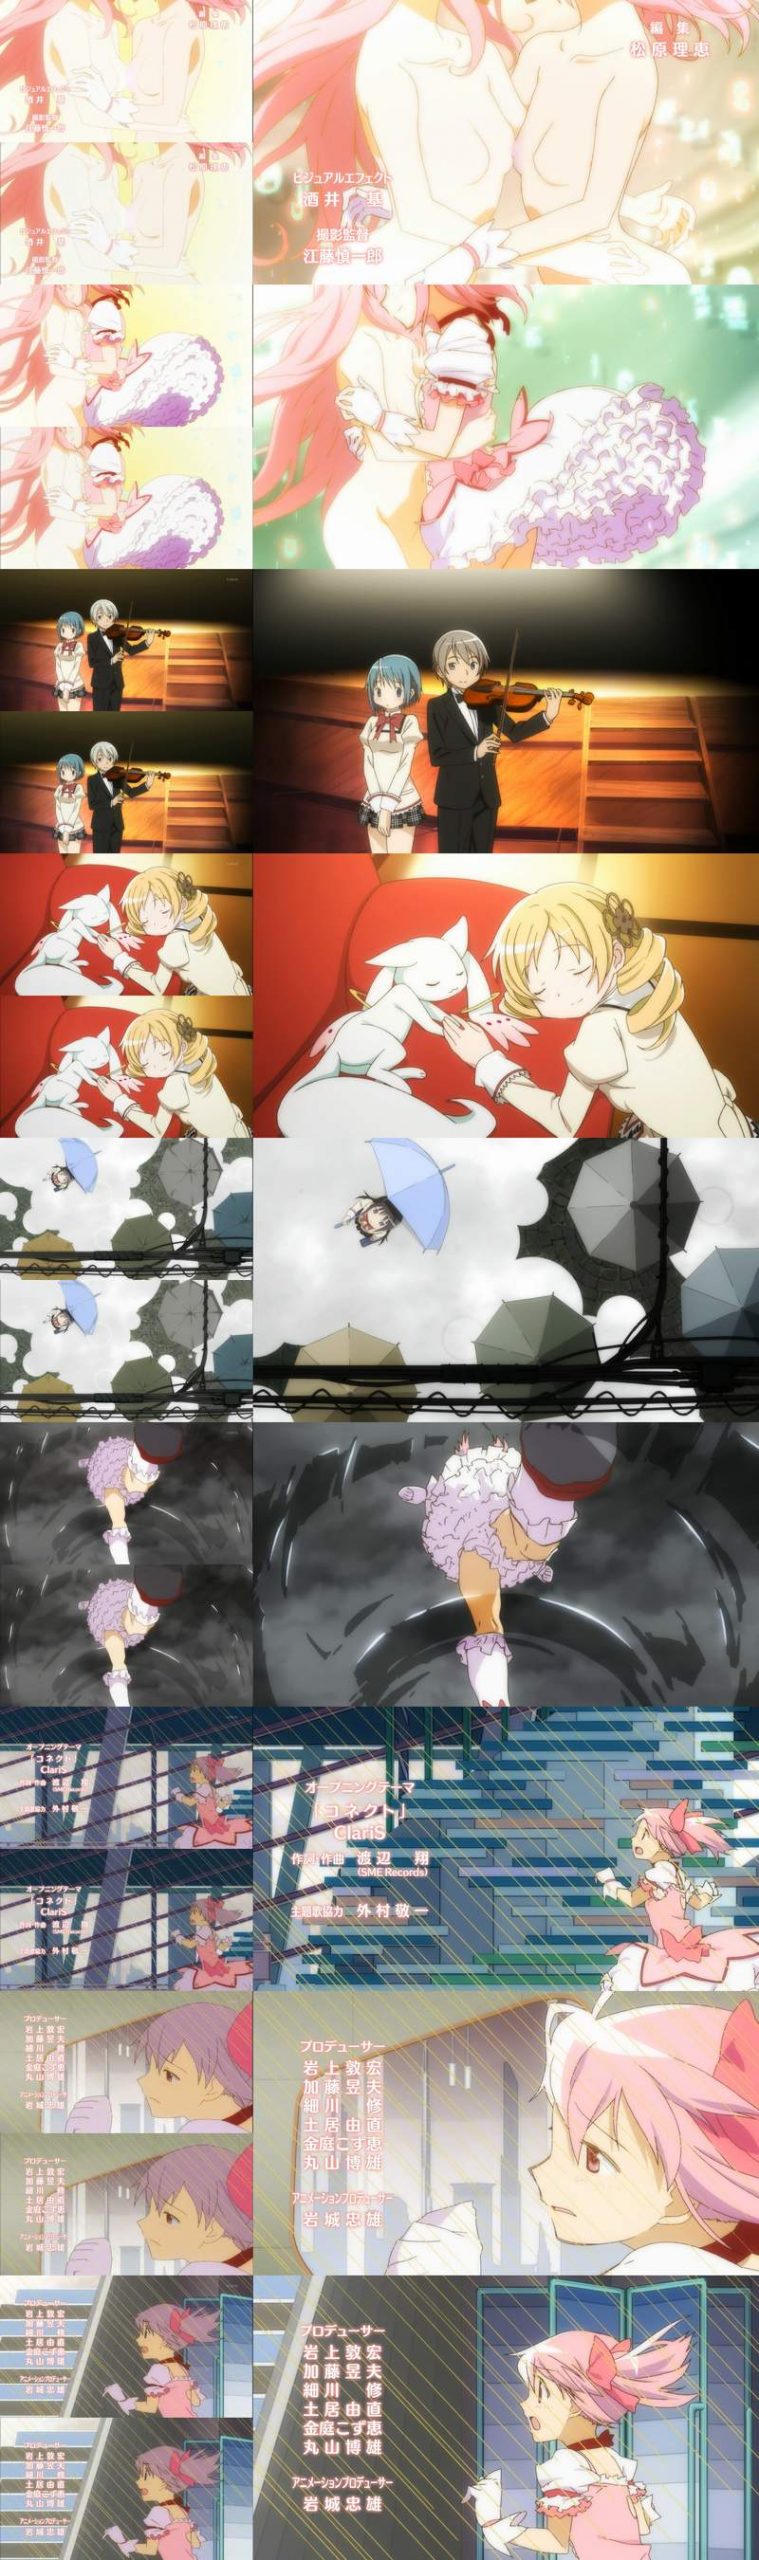 Madoka Magica Anime vs Blu-ray 5